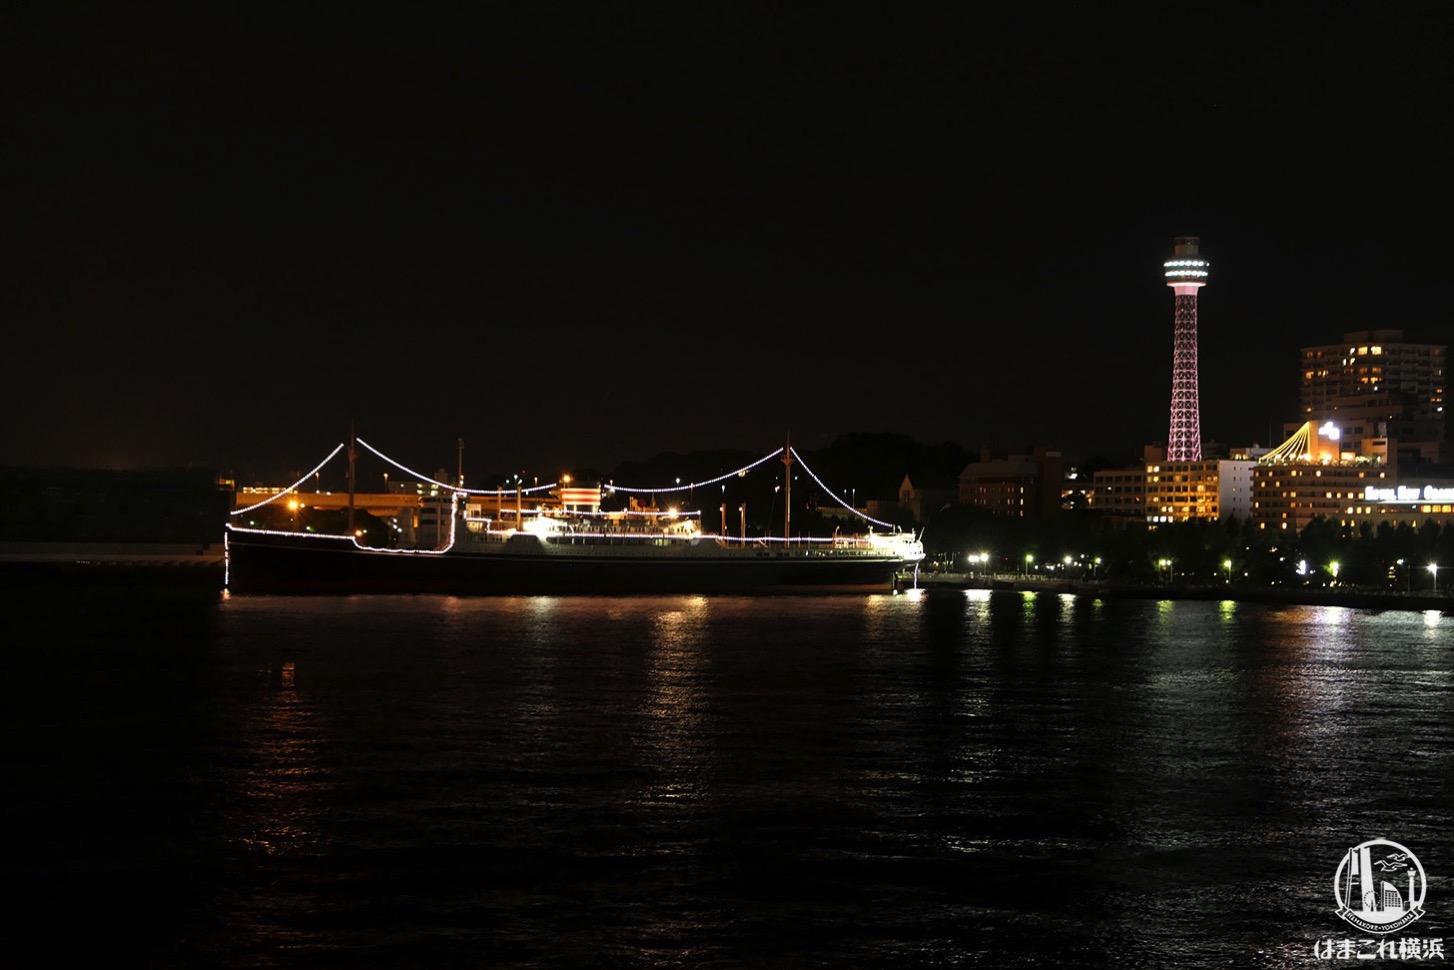 横浜港大さん橋国際客船ターミナル 屋上から見た横浜マリンタワーと氷川丸